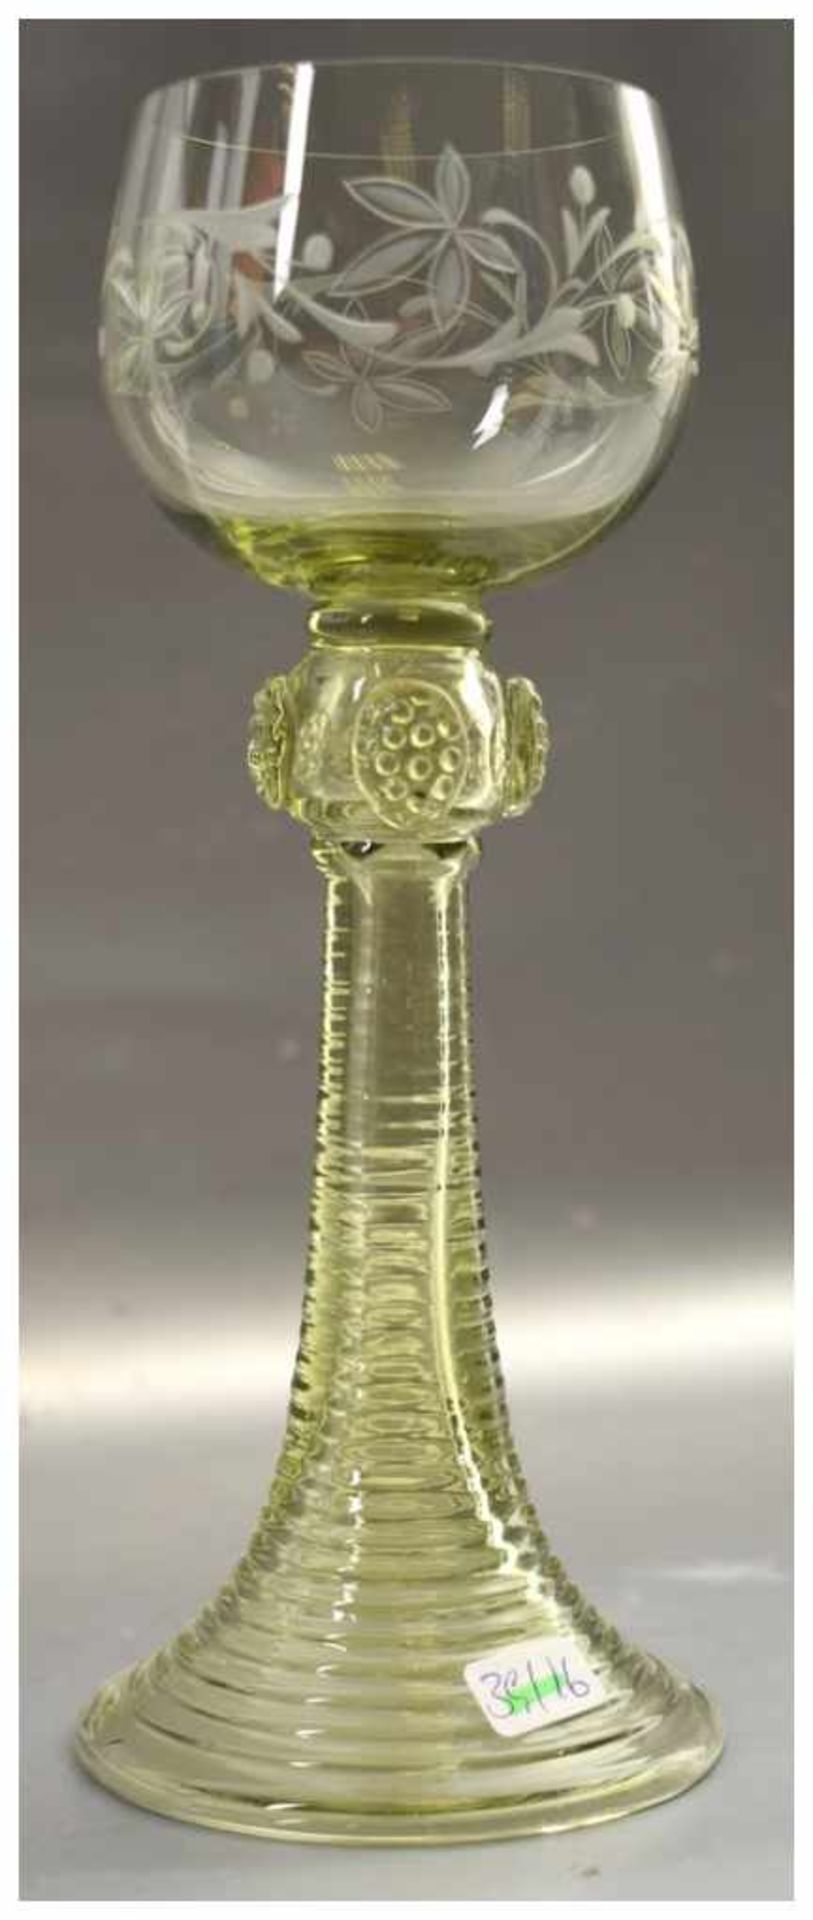 Weinglas farbl. Glas, Fuß mit Noppen, grüner Kelch, geschliffen verziert, H 20 cm, um 1900